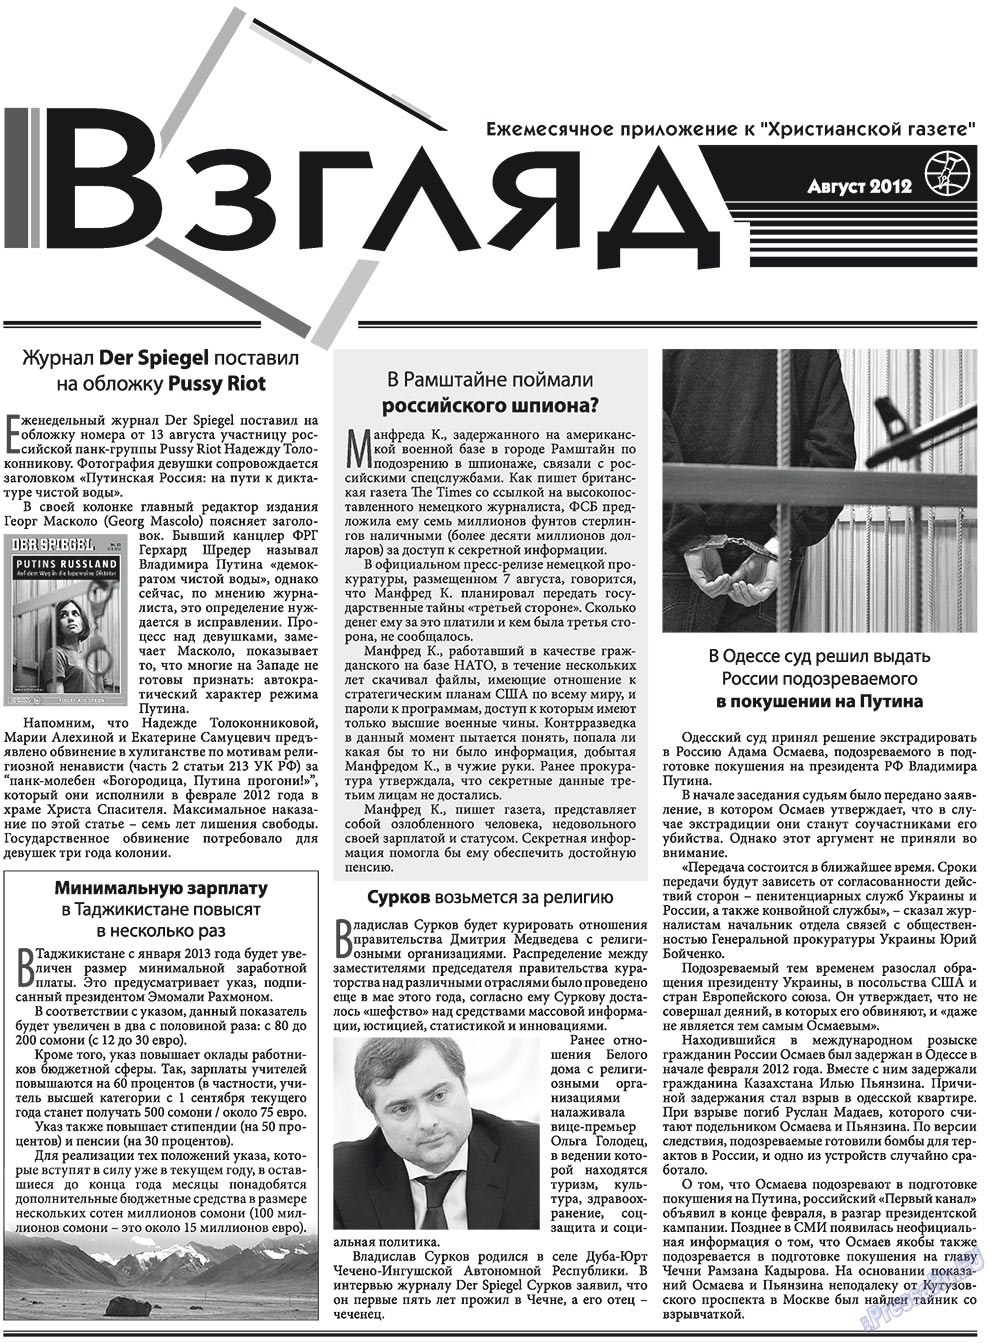 Христианская газета, газета. 2012 №8 стр.15